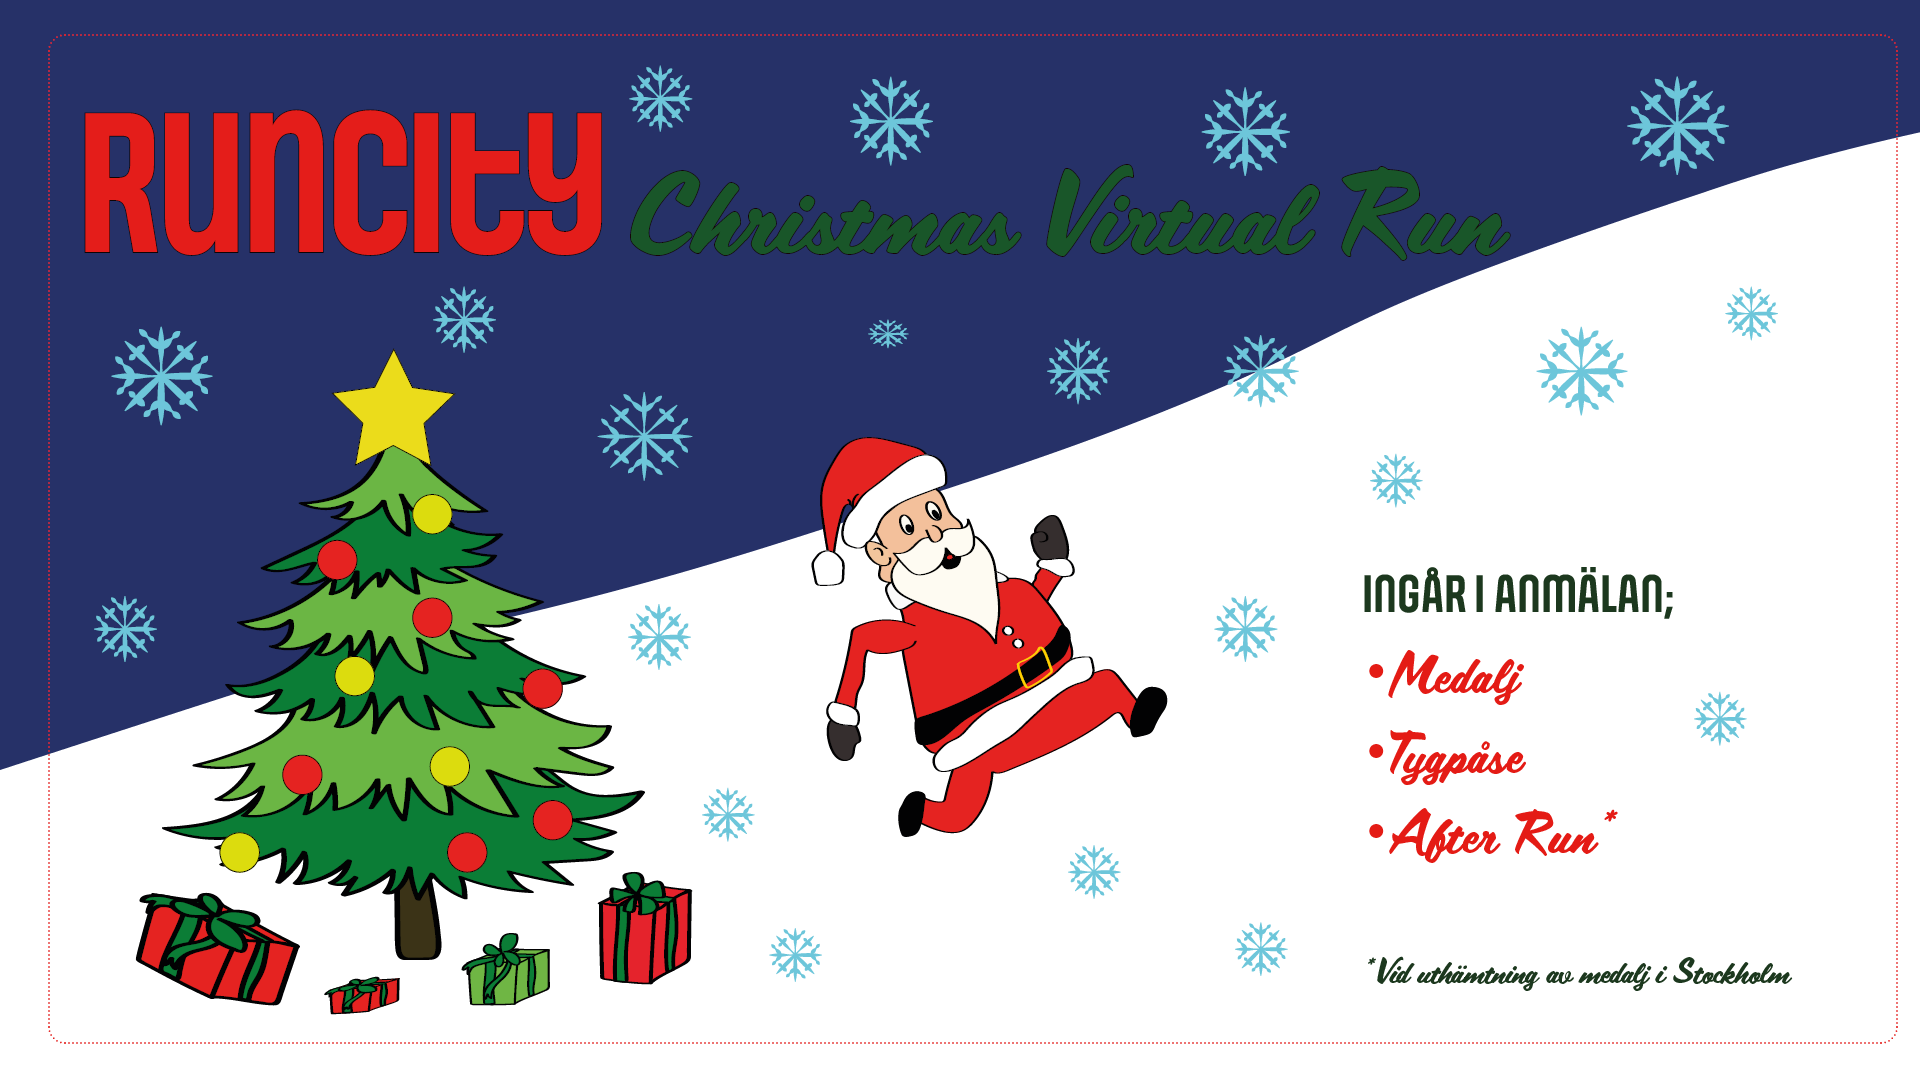 Runcity Christmas Virtual Run